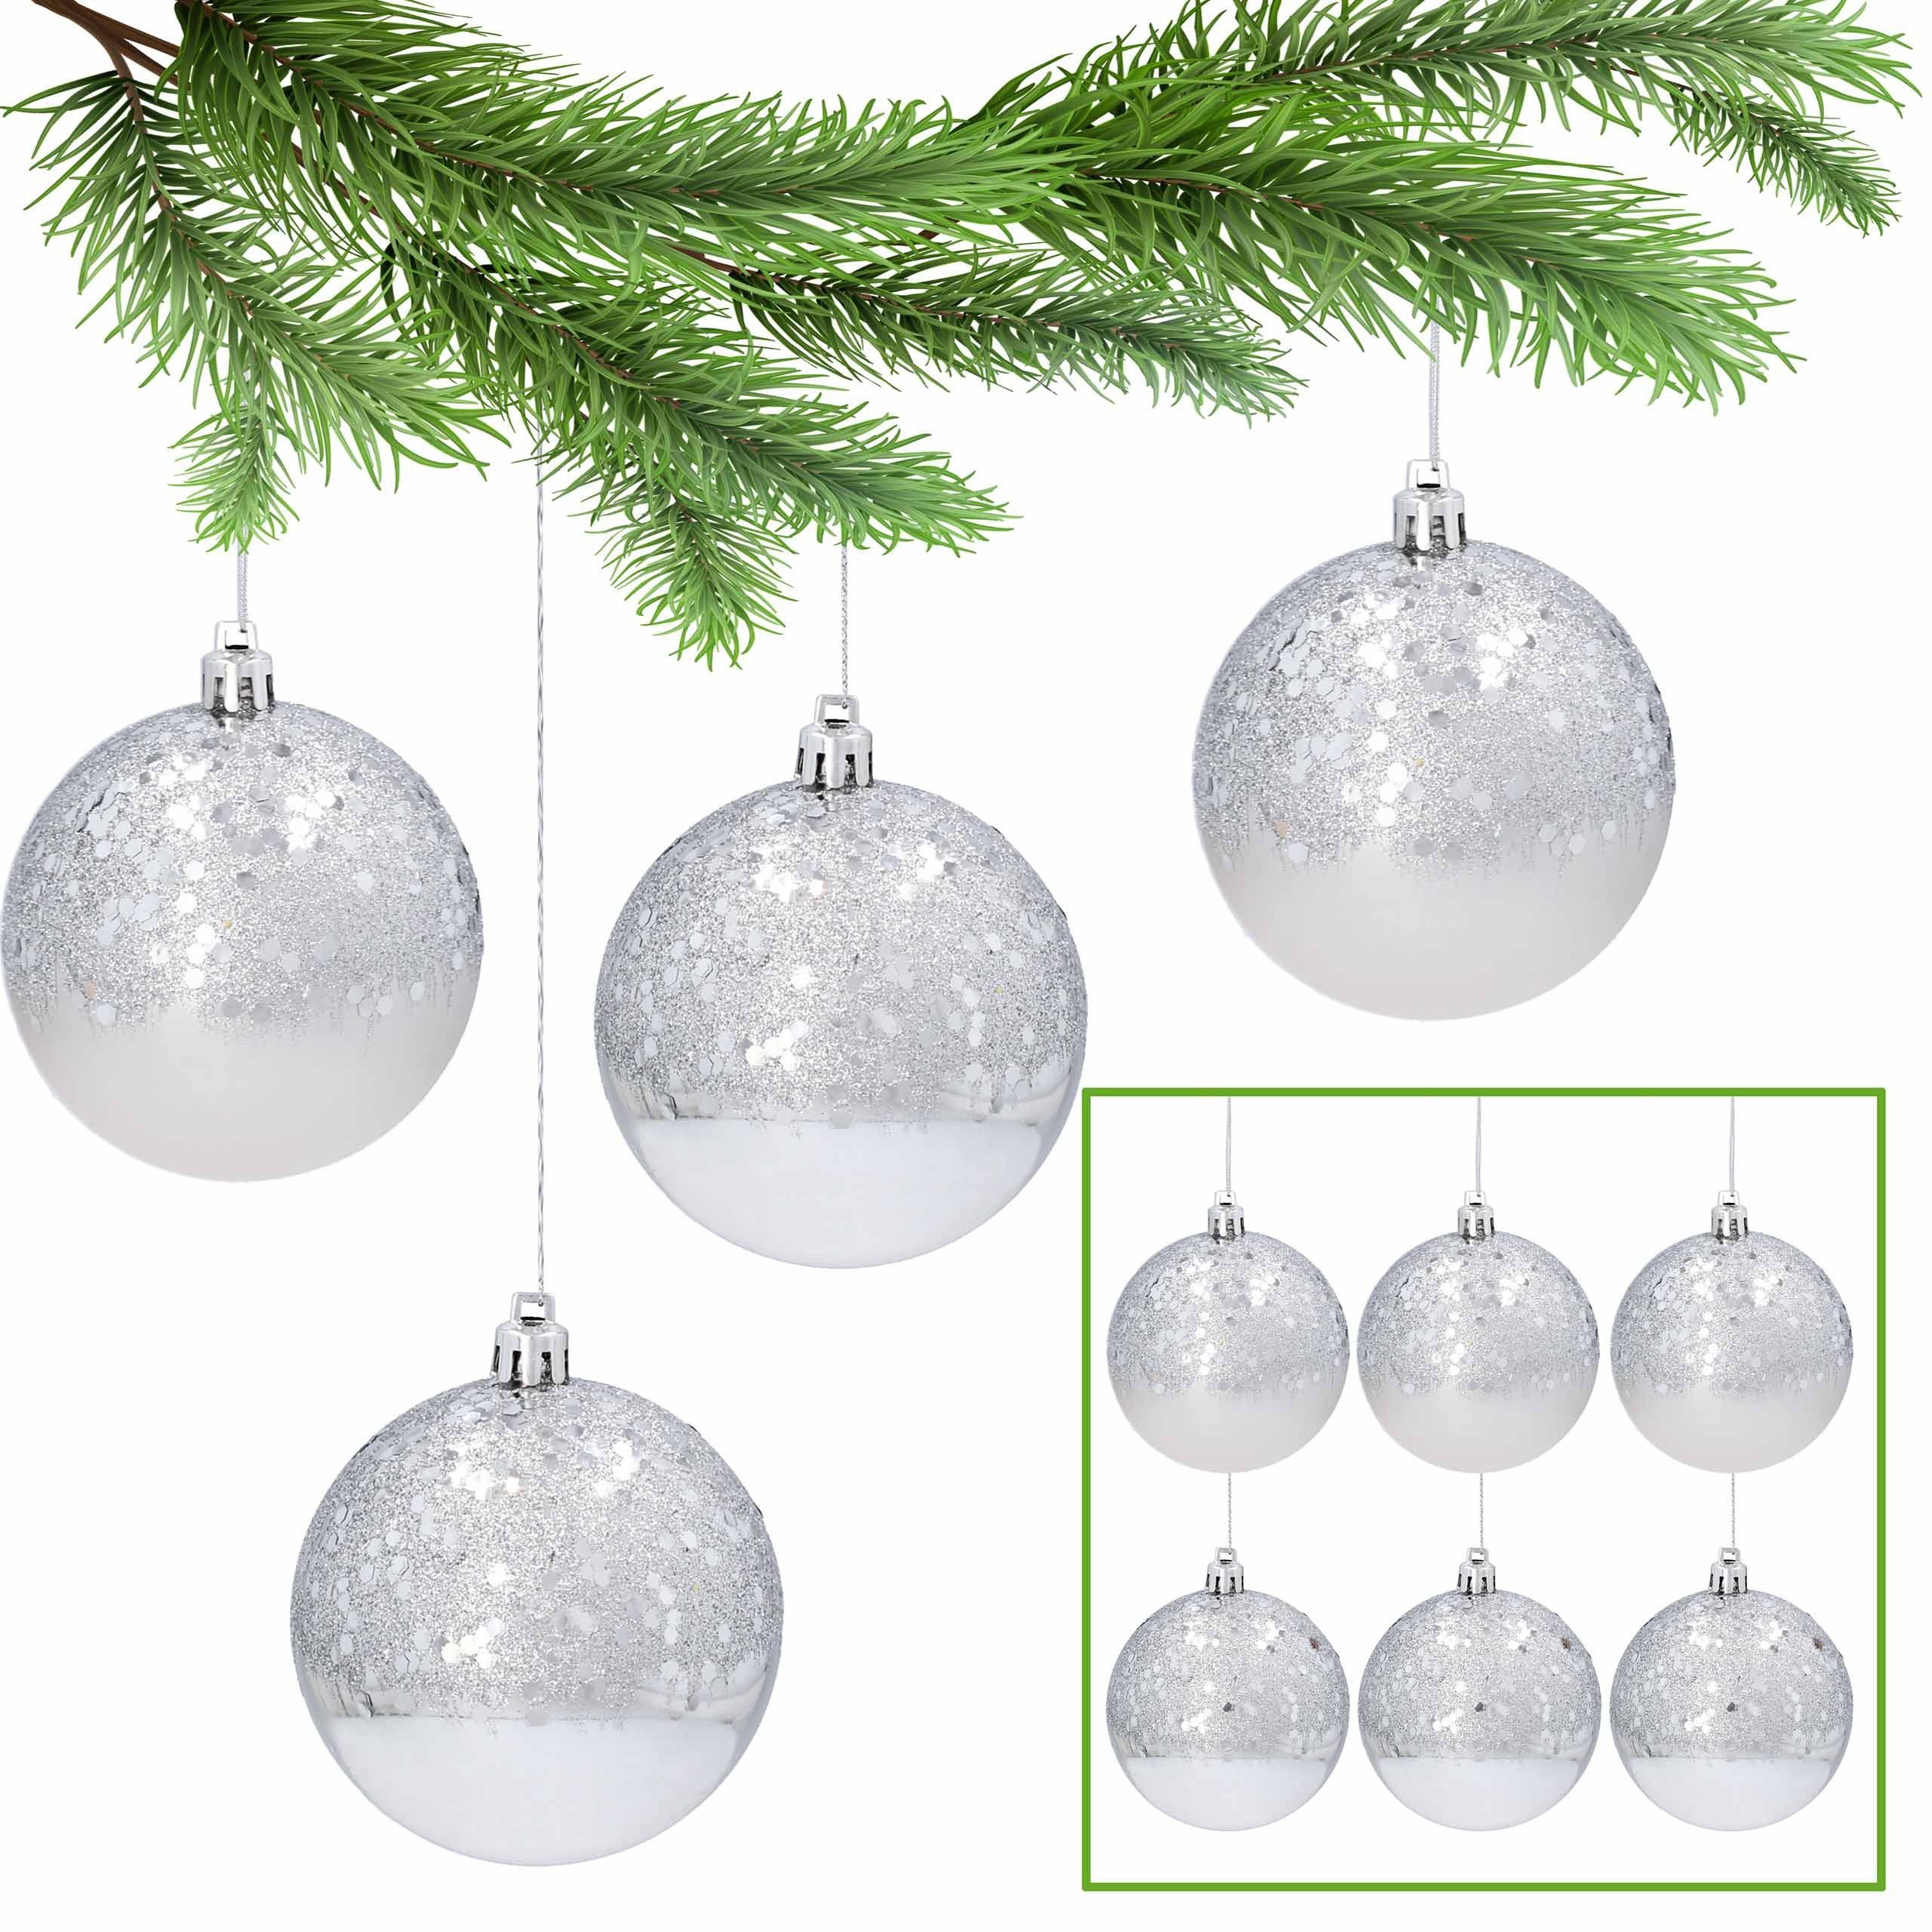 Sarcia.eu Weihnachtsbaumkugel Christbaumkugeln aus Kunststoff mit Glitzer 8cm, 6tlg. Pack 1